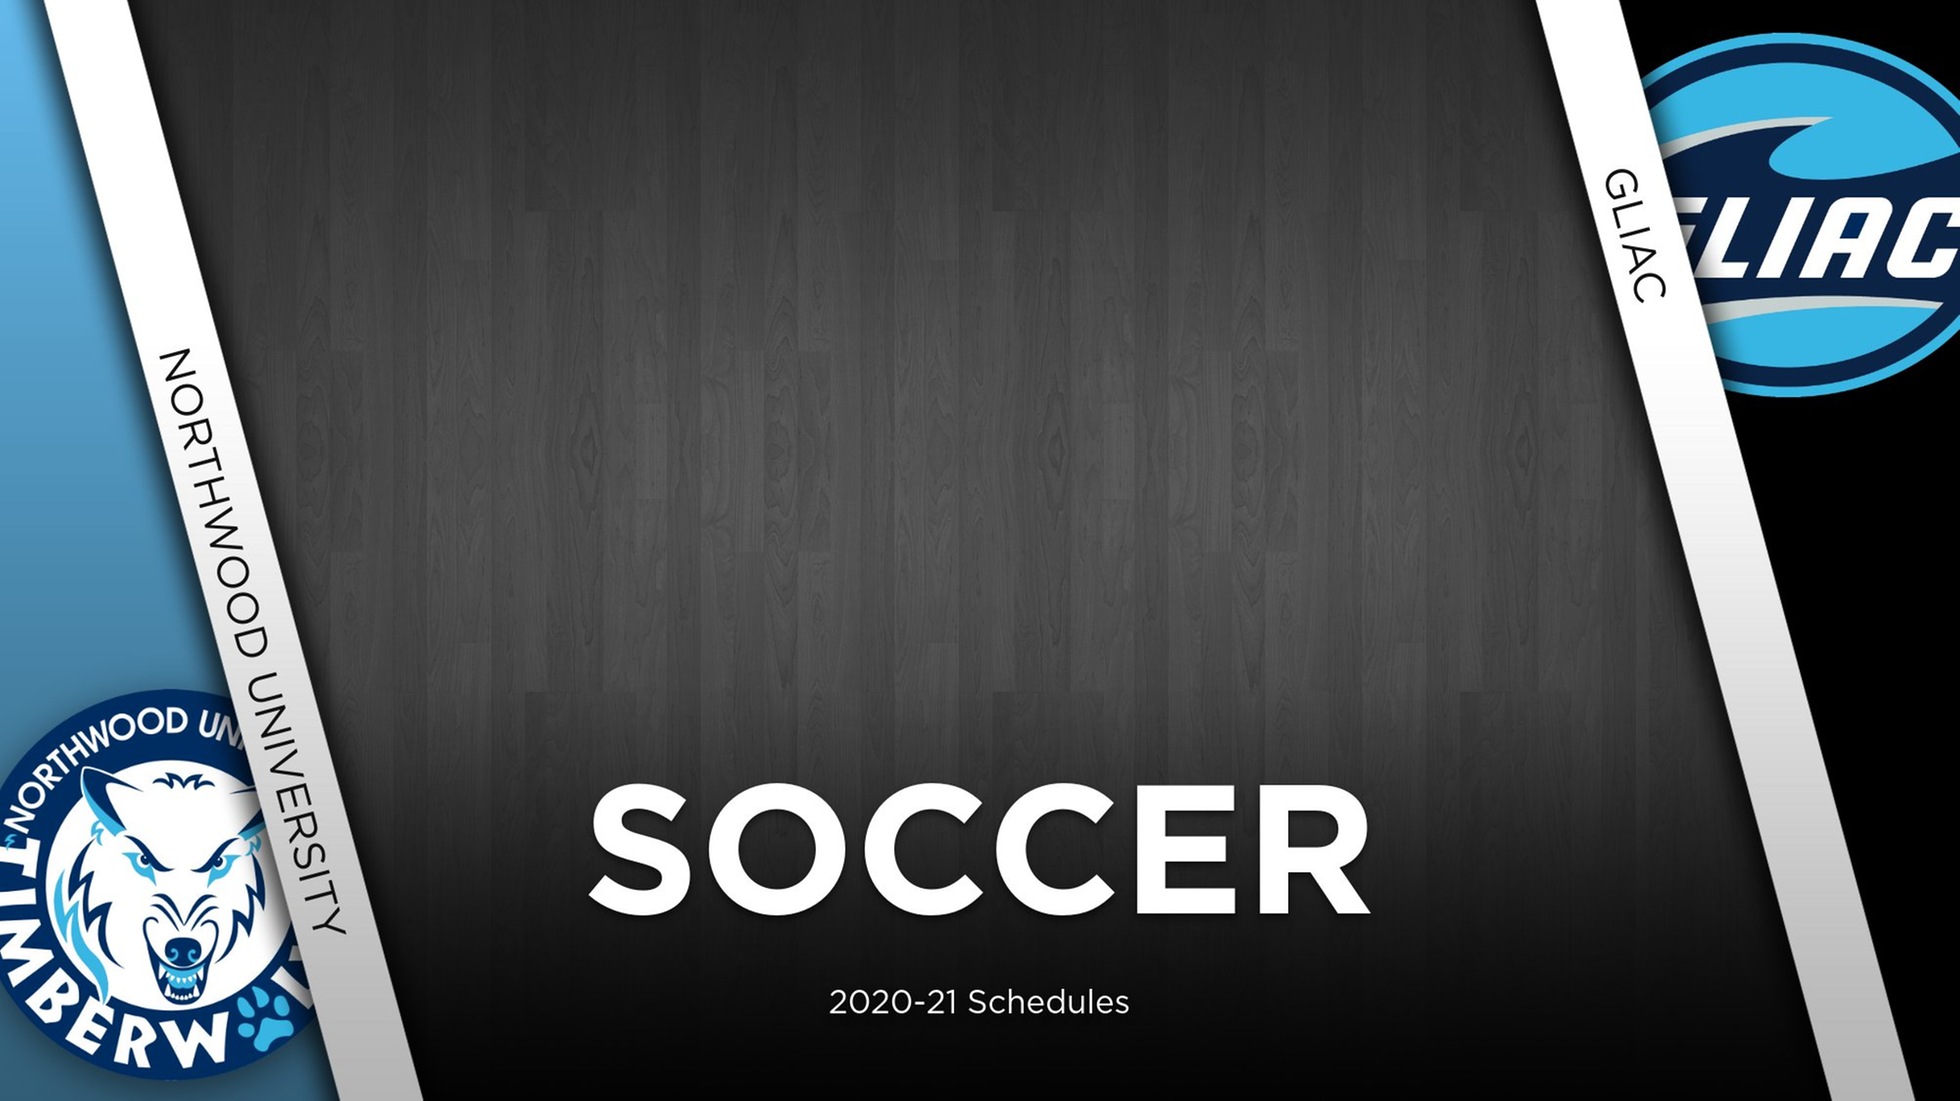 GLIAC Announces 2020-21 Soccer Schedules